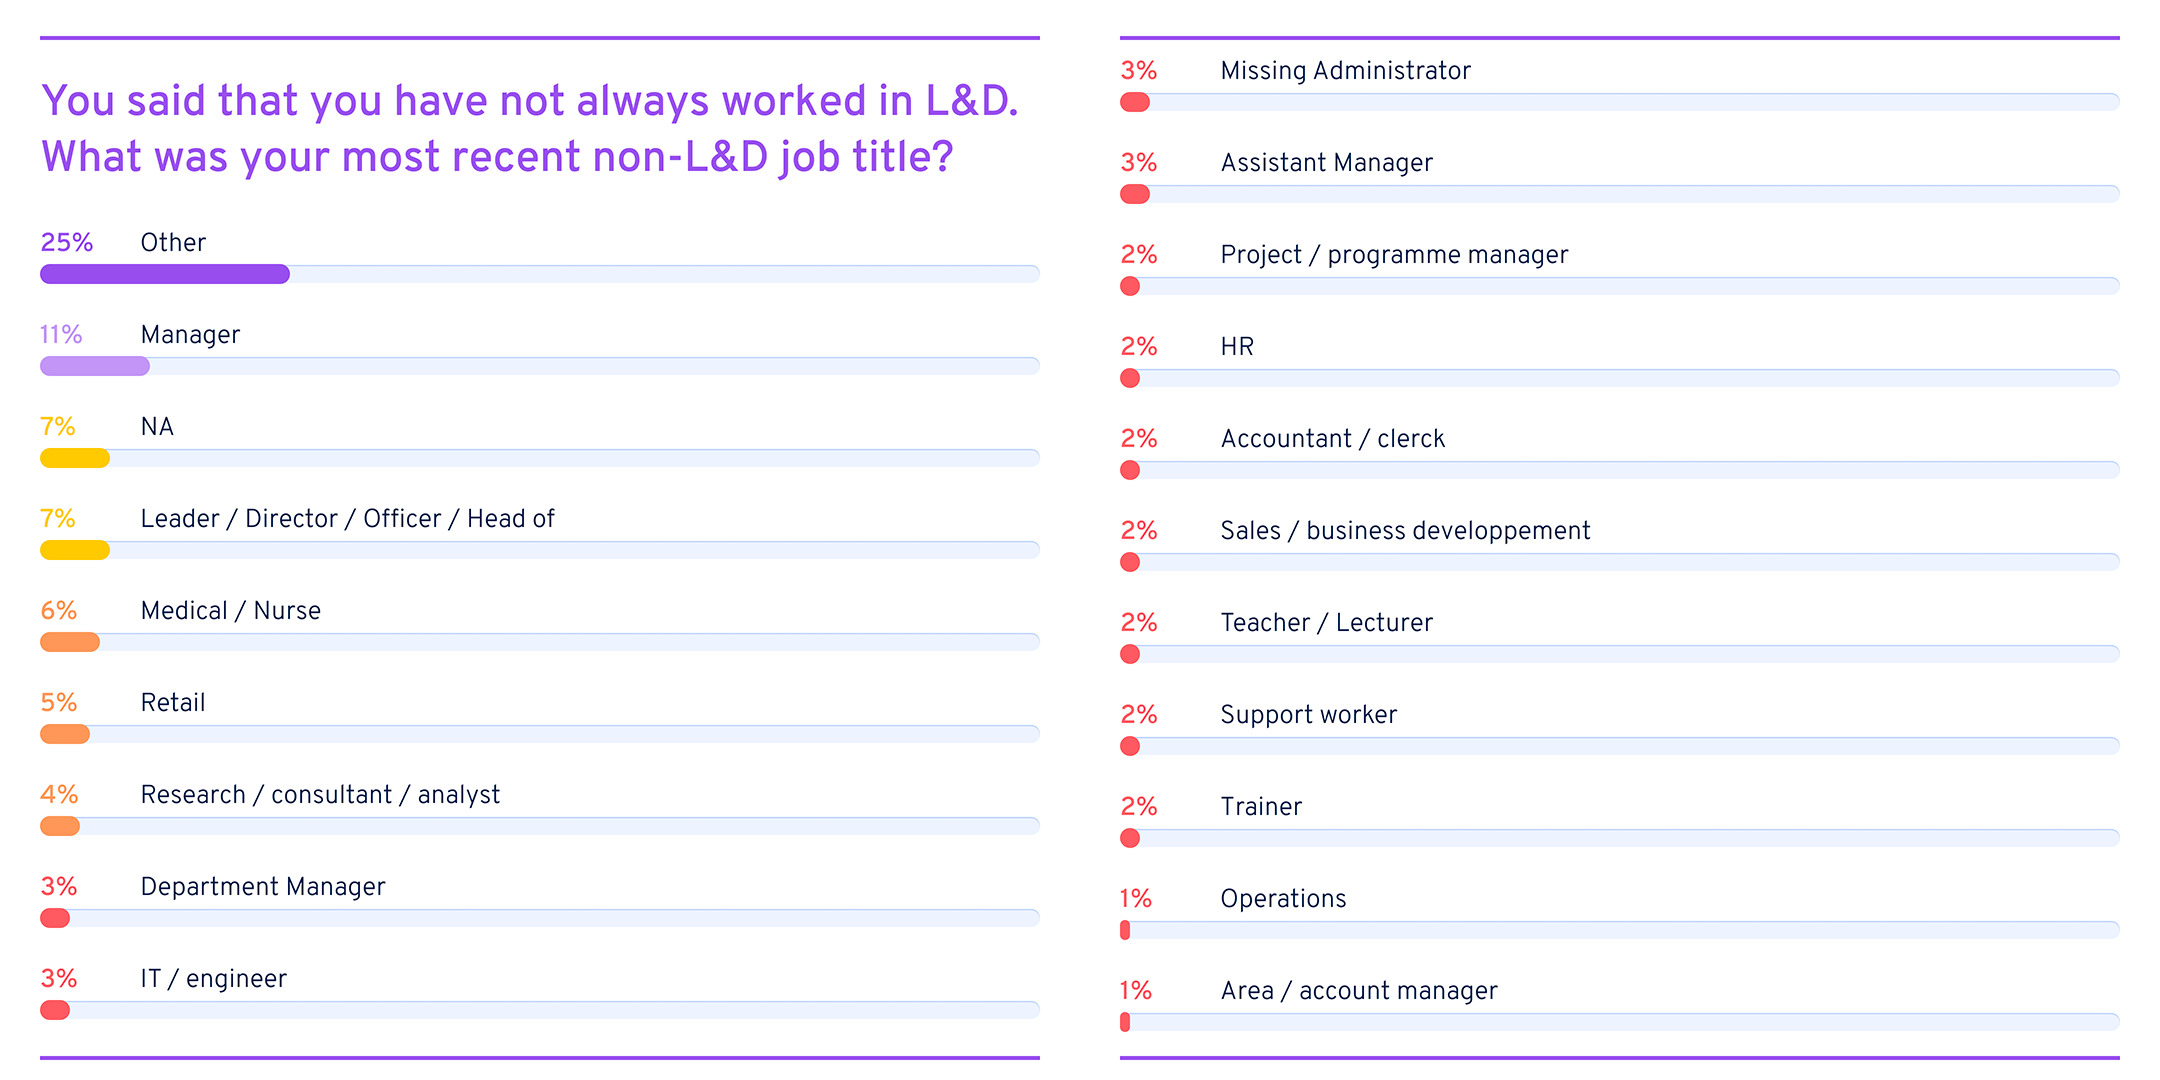 Previous non-L&D job titles